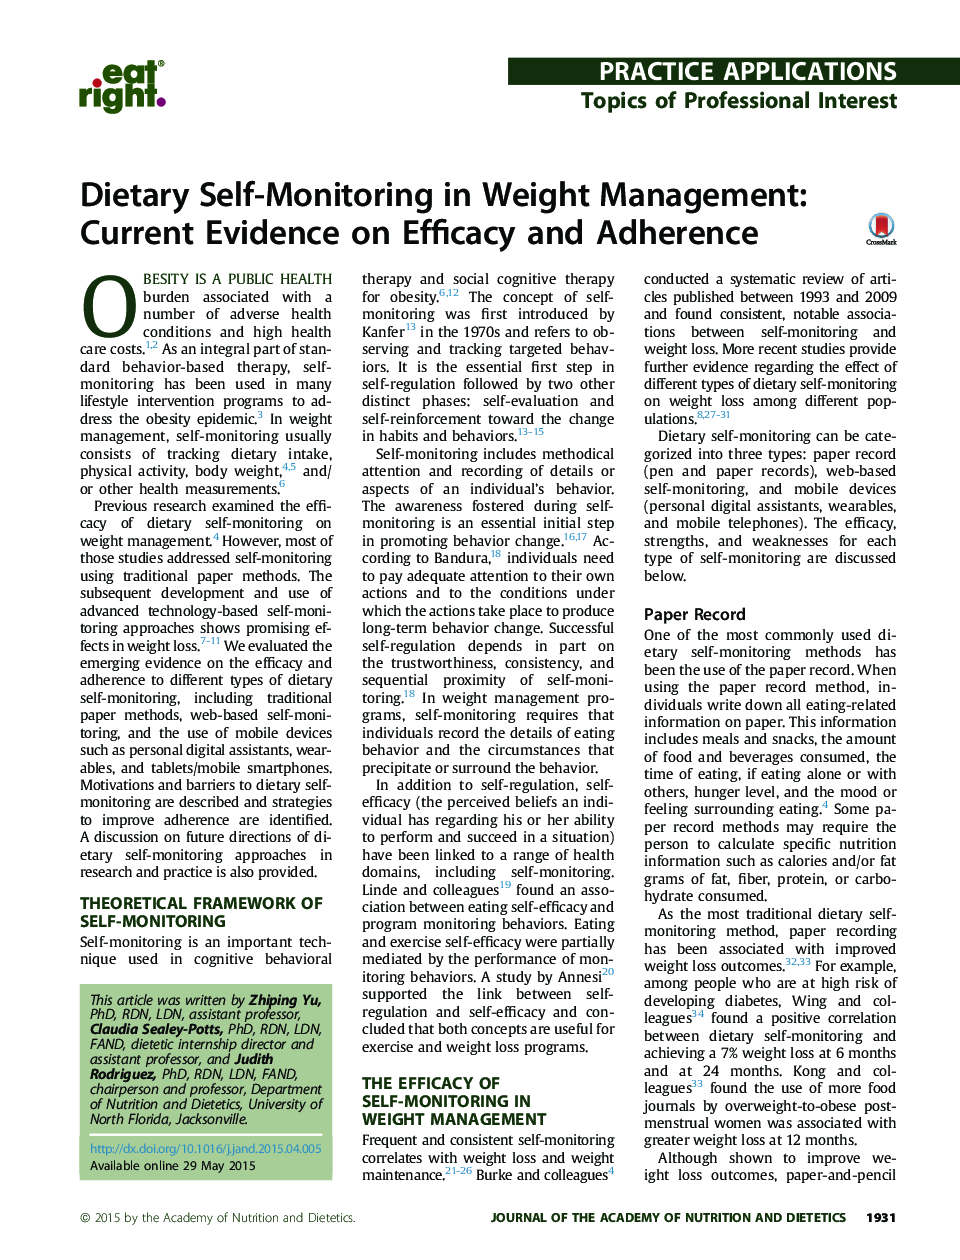 خودمراقبتی در مدیریت وزن: شواهد کنونی در مورد اثربخشی و پایبندی 